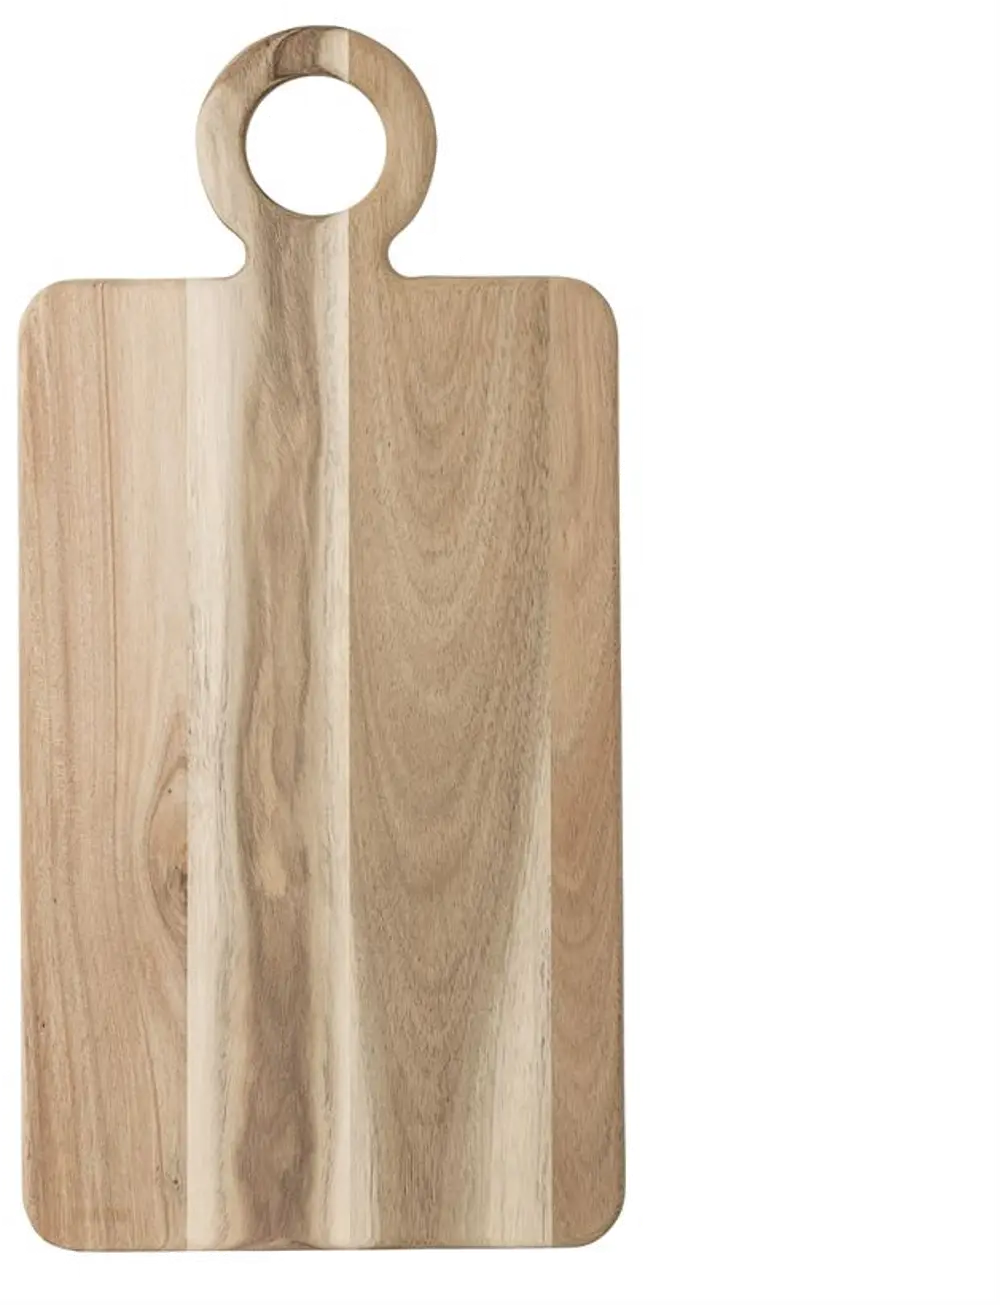 A40127678/CUTBOARD Acacia Wood Cutting Board Tray-1